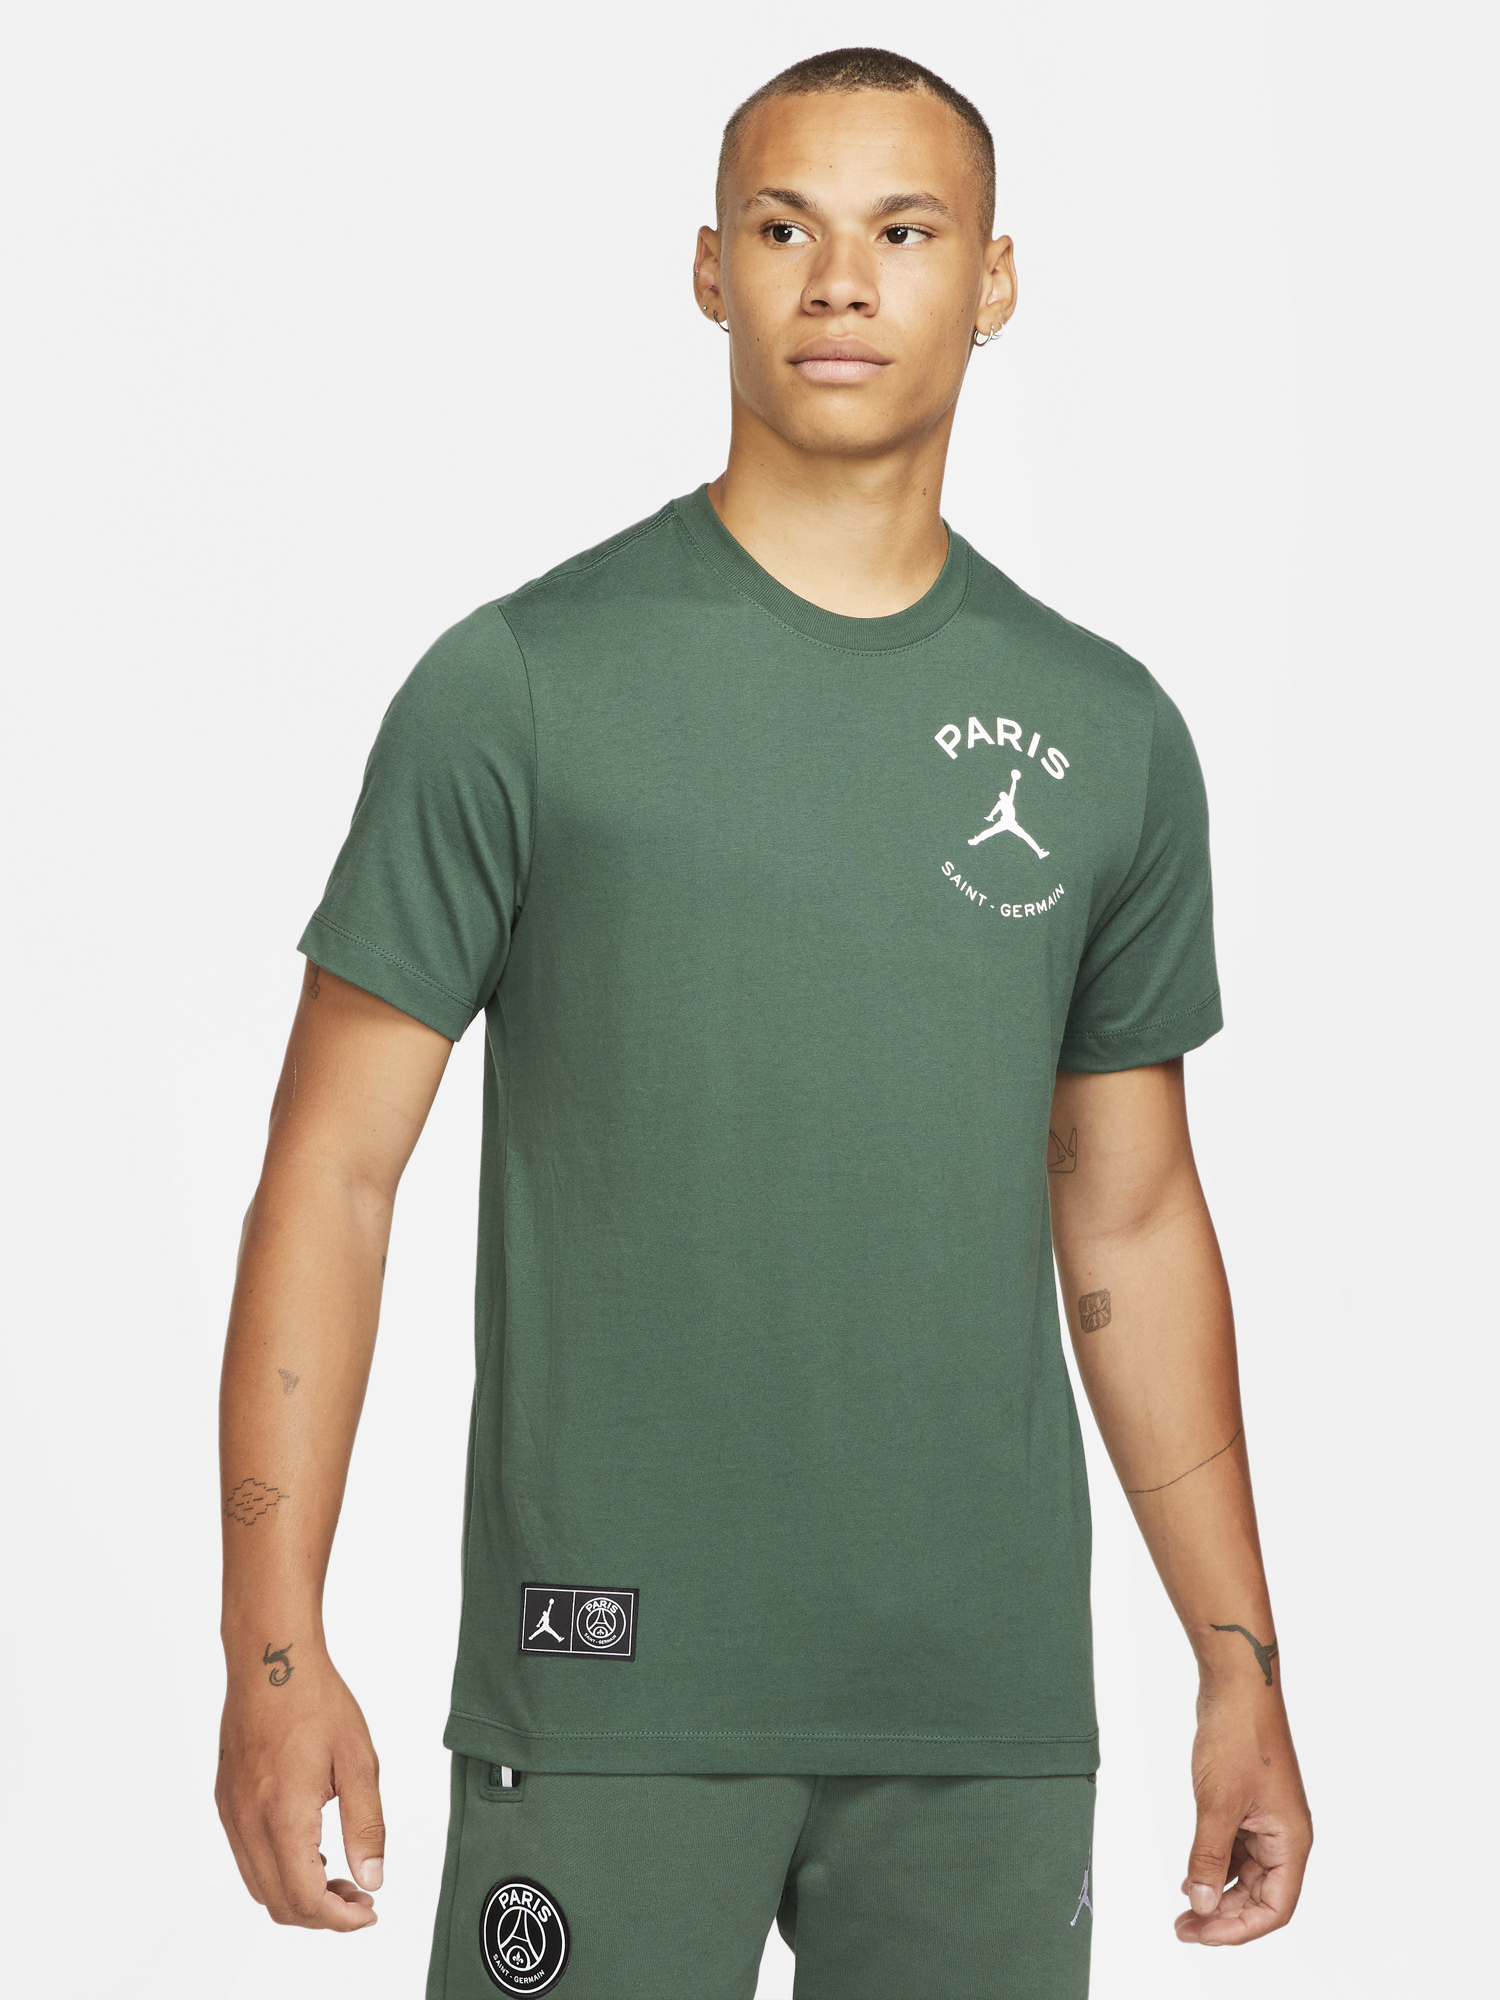 jordan-psg-paris-saint-germain-t-shirt-noble-green-1